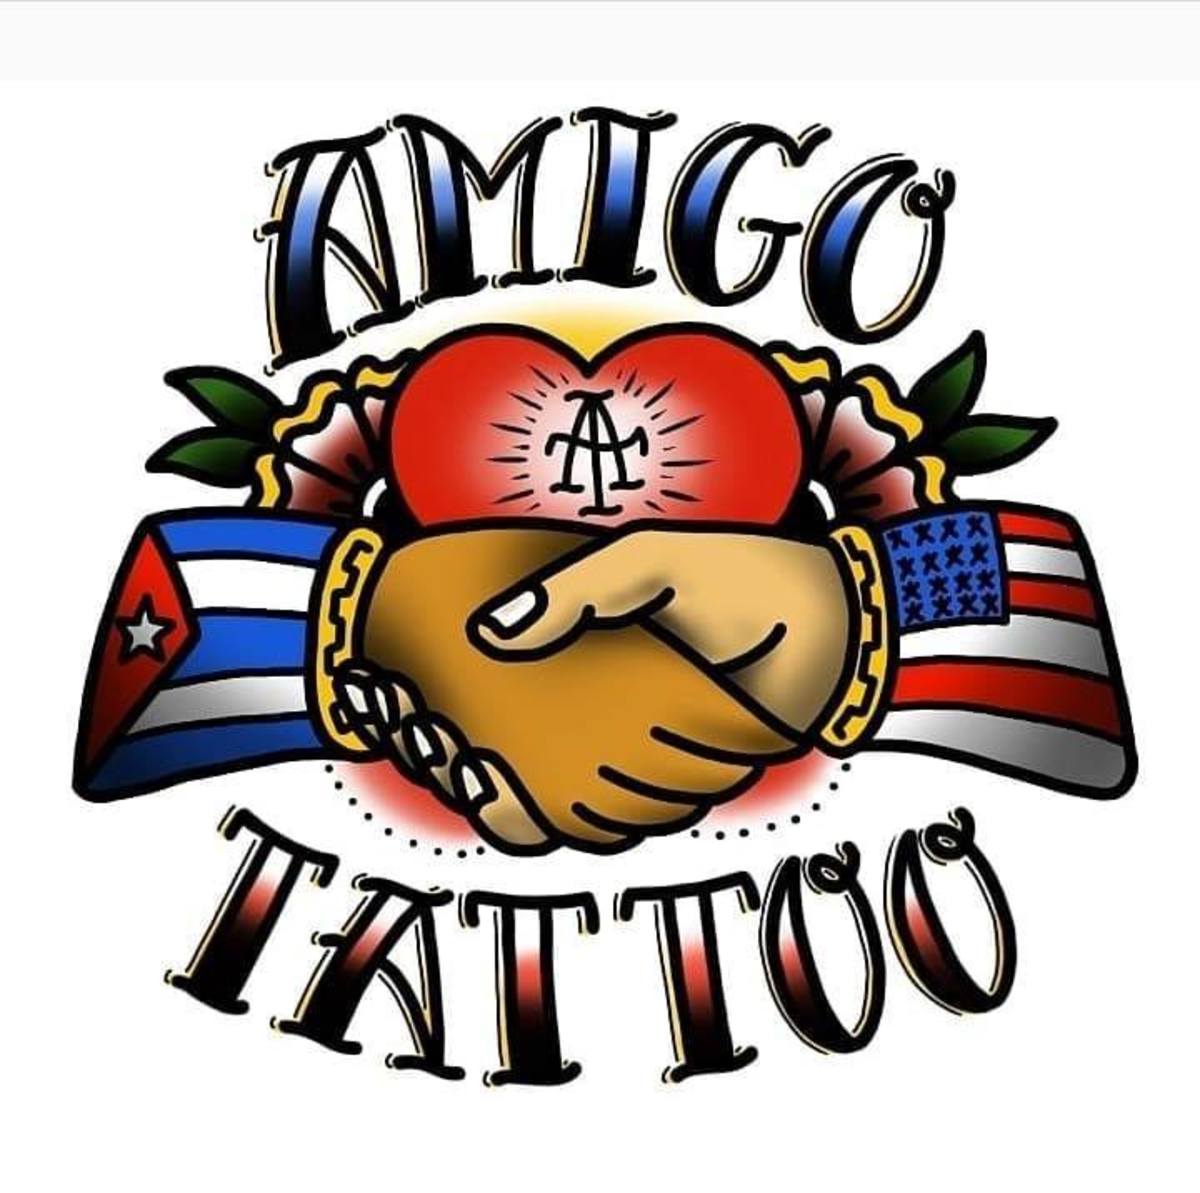 James Langner, Amigo tetoválás, atomi tetoválás, James Langner atomtetoválás, James Langner Amigo tetoválás, kubai zenekari tetoválás, illegális tetoválás Kubában, tampa művészek, kubai tetoválások, tintás magazin